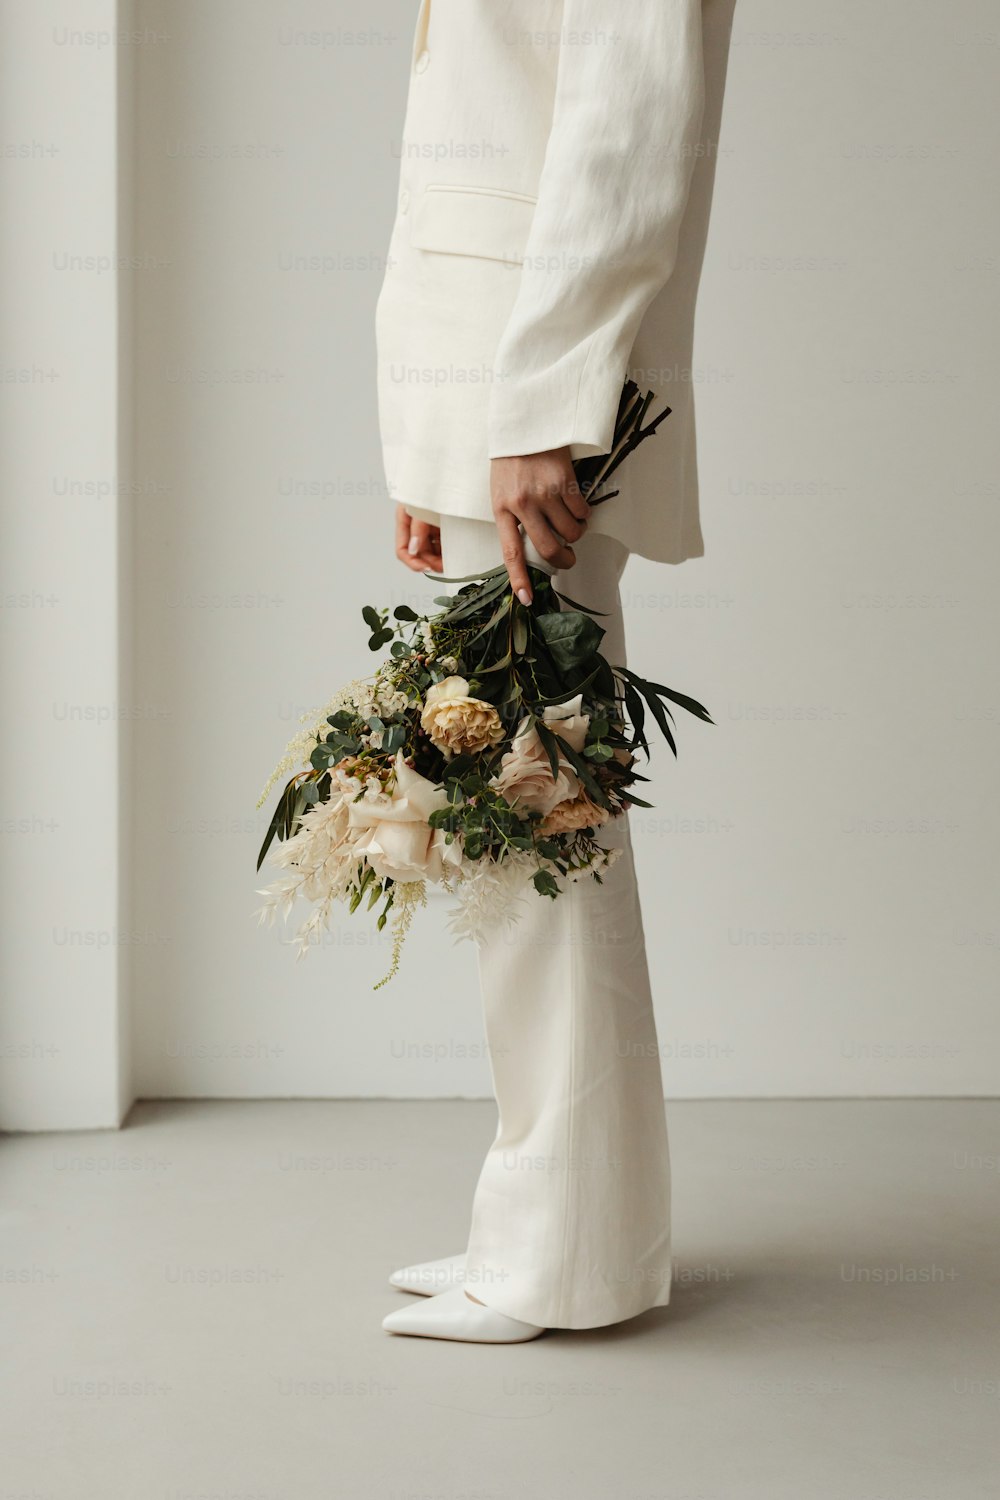 Una persona con un traje blanco sosteniendo un ramo de flores